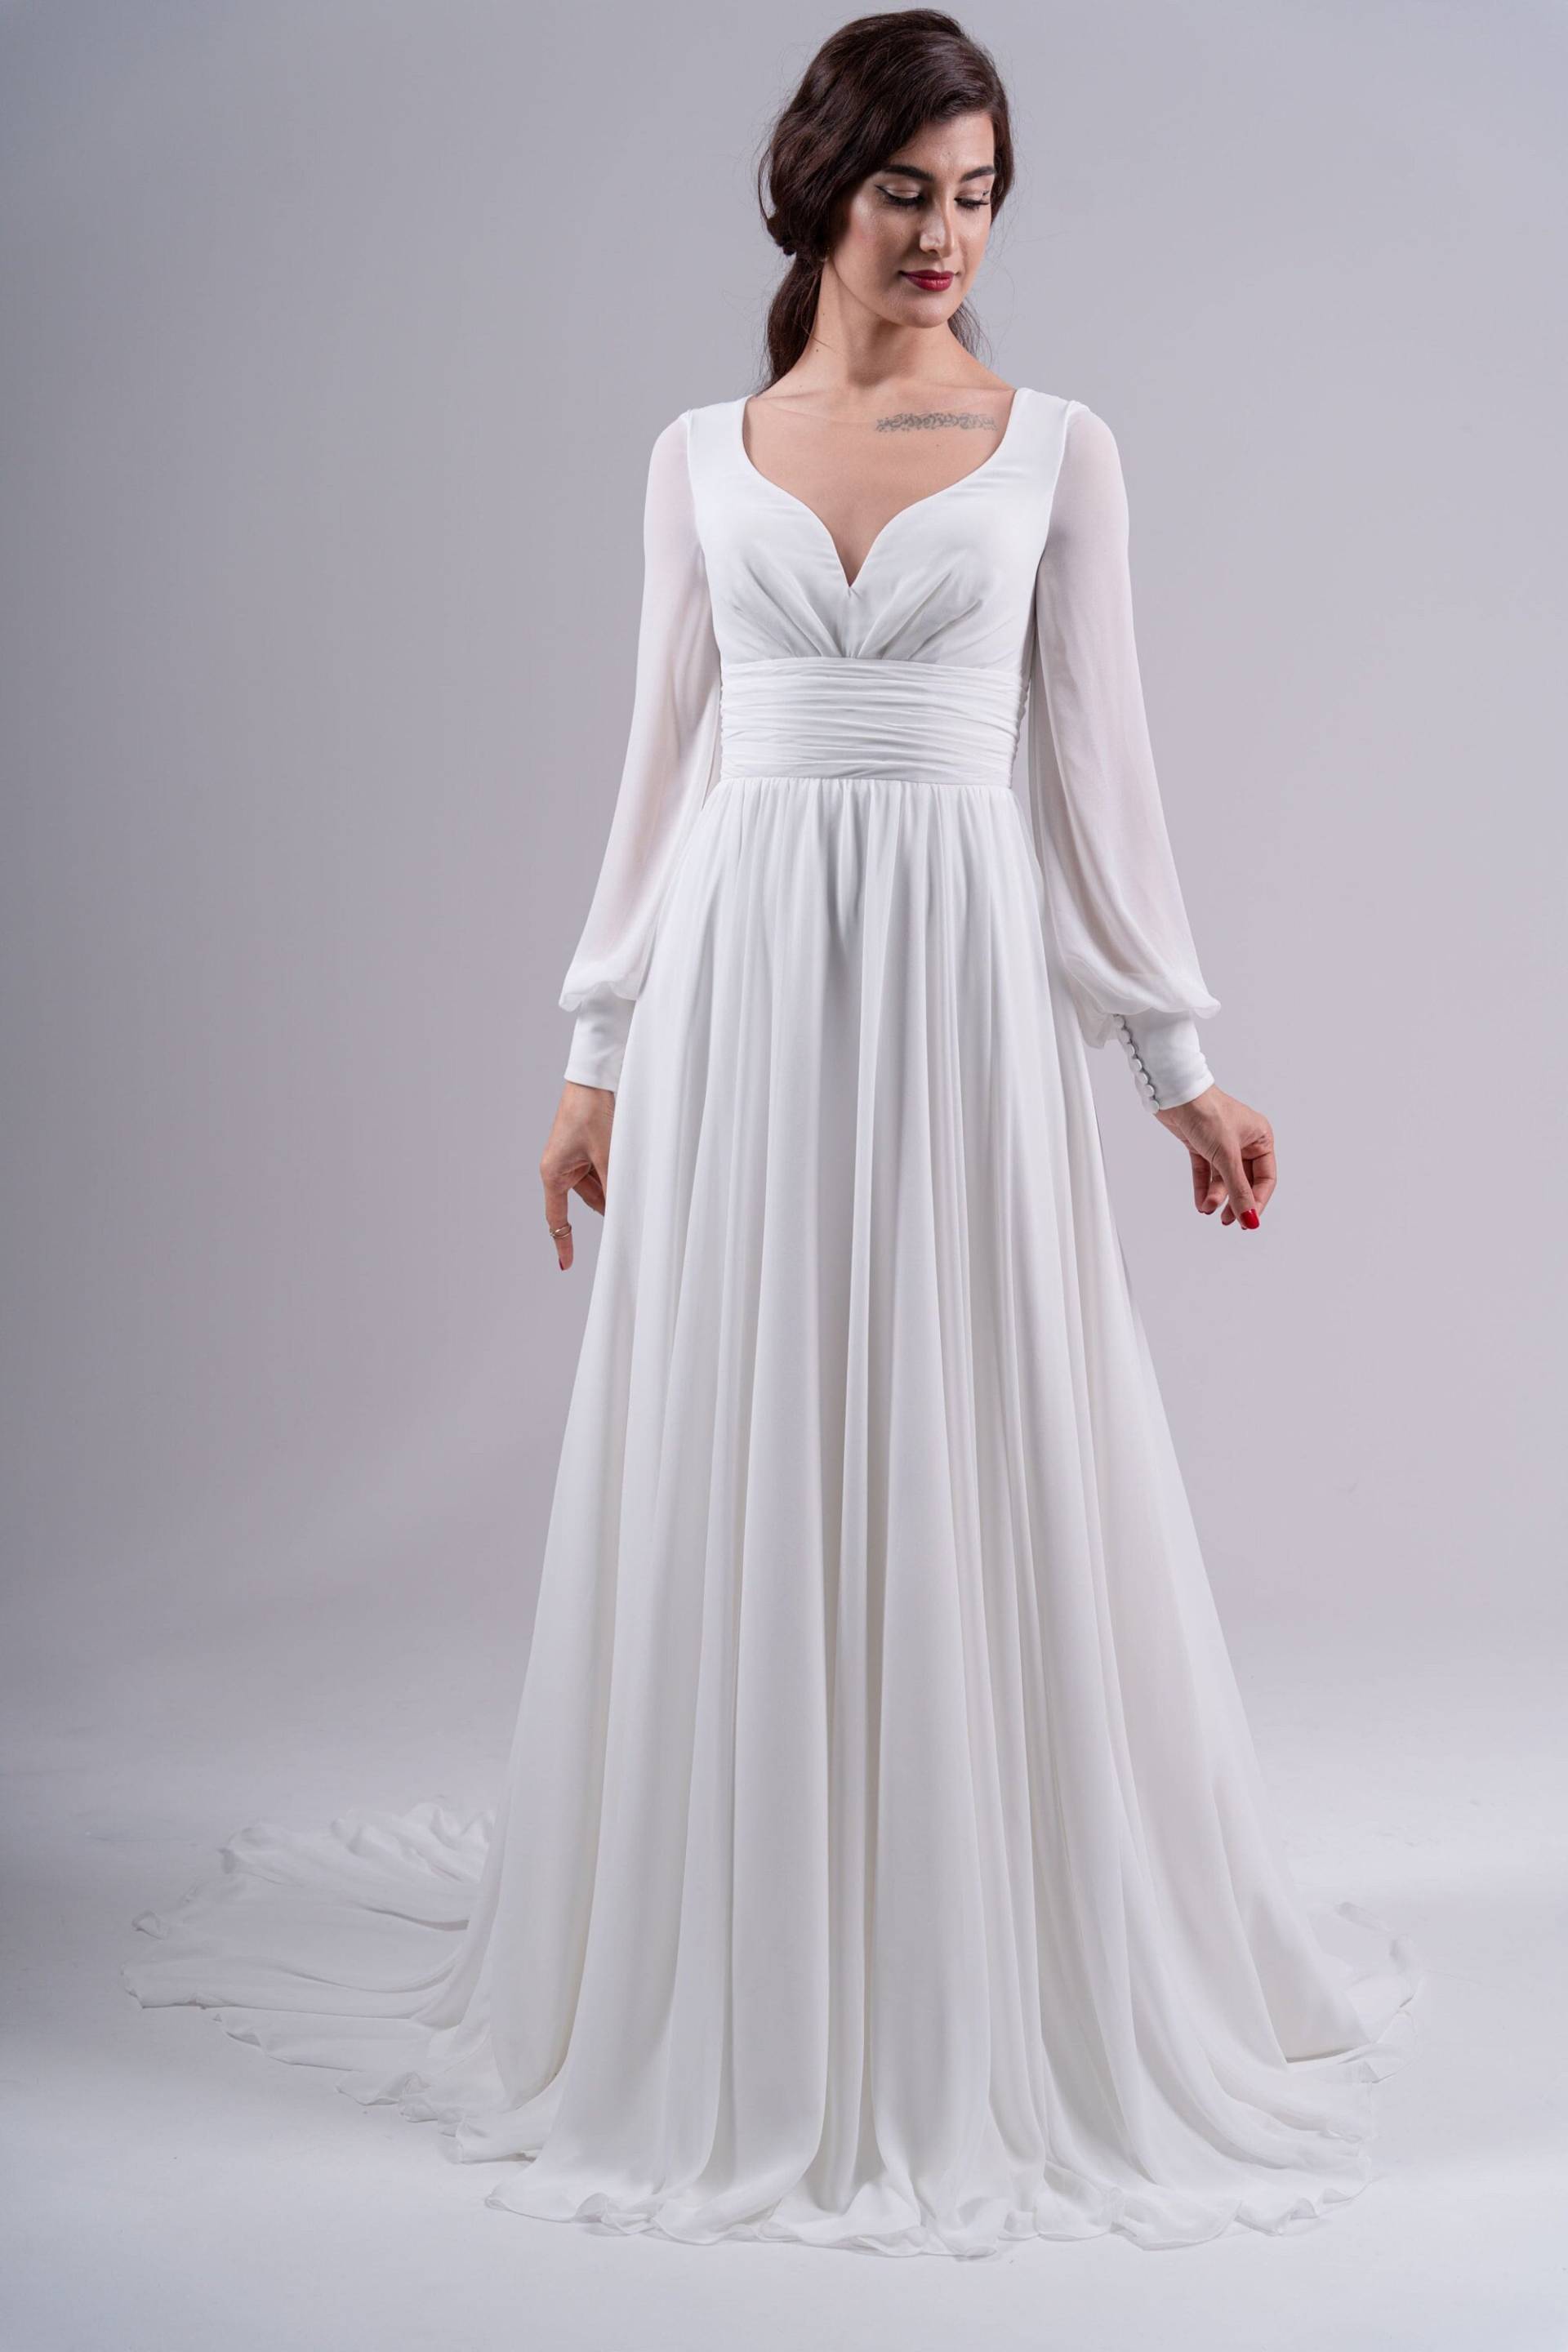 Chiffon Brautkleid|Hochzeitskleid Mit Langen Ärmeln|Kirche Brautkleid|Krepp Kleid|Schulterfreies Kleid |Perlenknöpfe|Elegantes von YanelShop